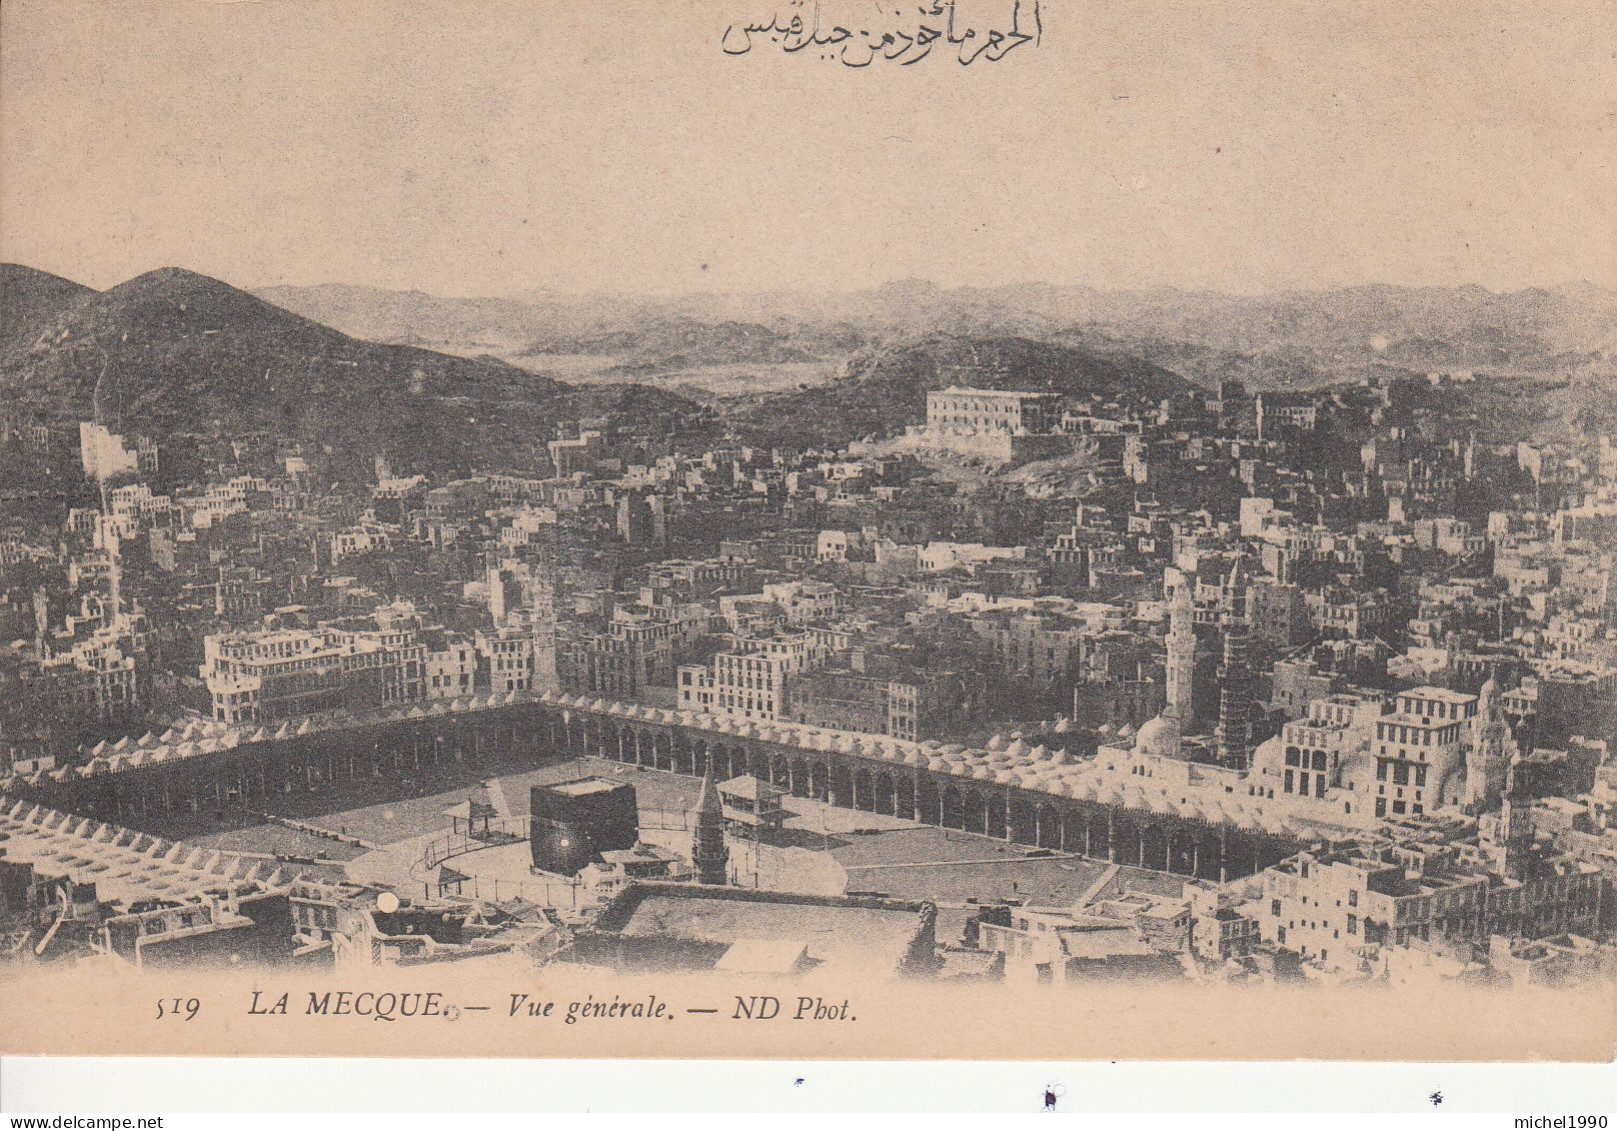 La Mecque / Mecca : Deux Cartes Postales Années 1920's / Two Postcards Circa 1920's - Saudi-Arabien